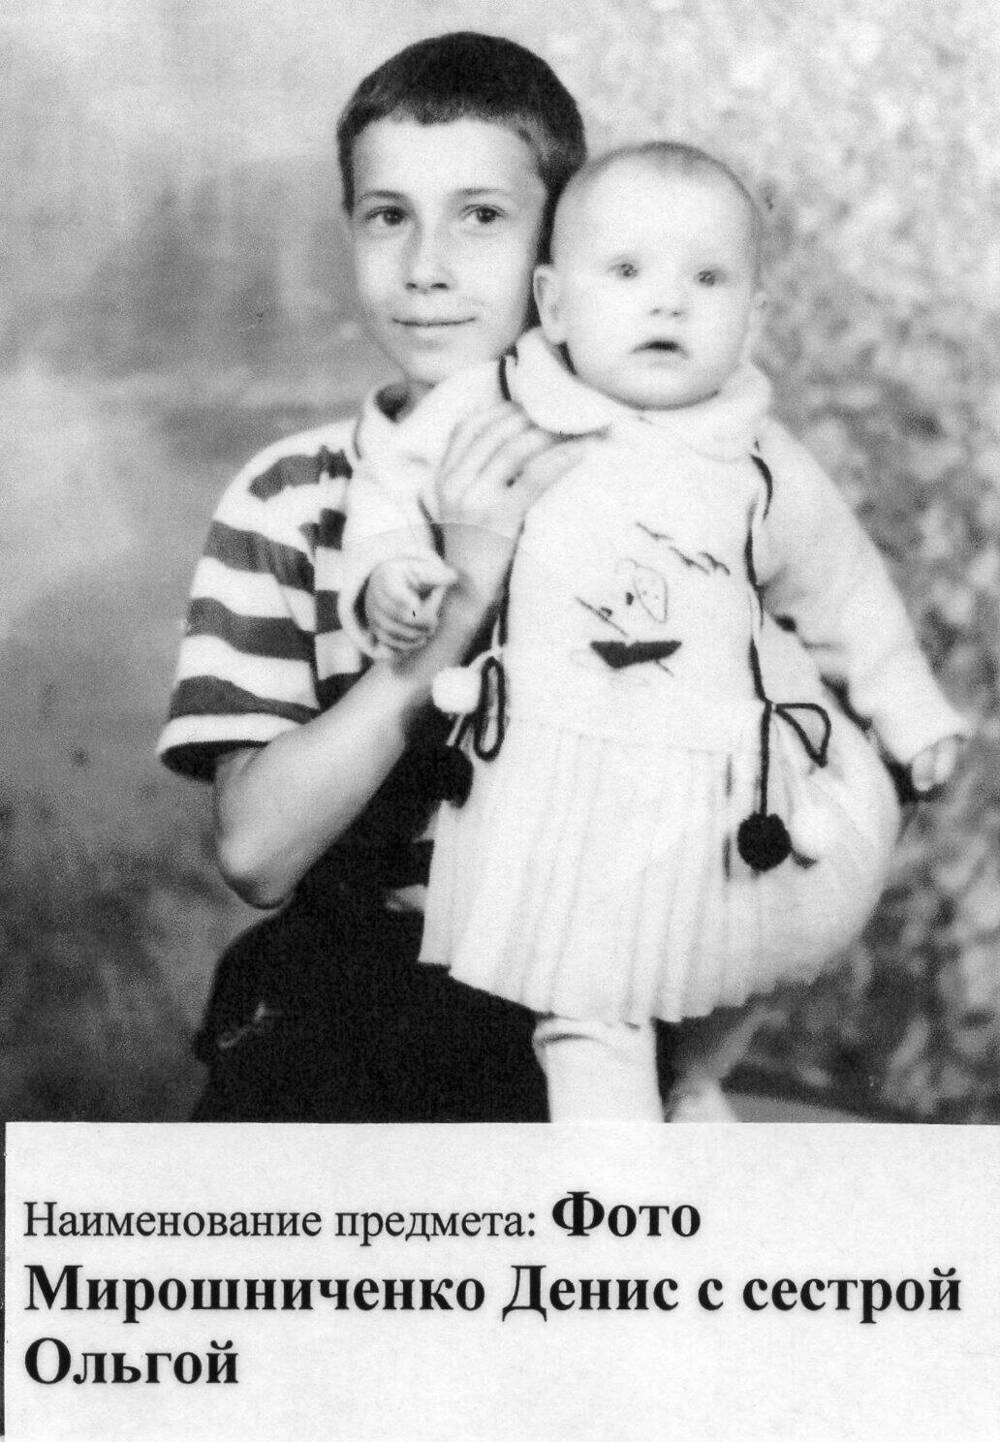 Фото Мирошниченко Дениса с сестрой Ольгой (копия)